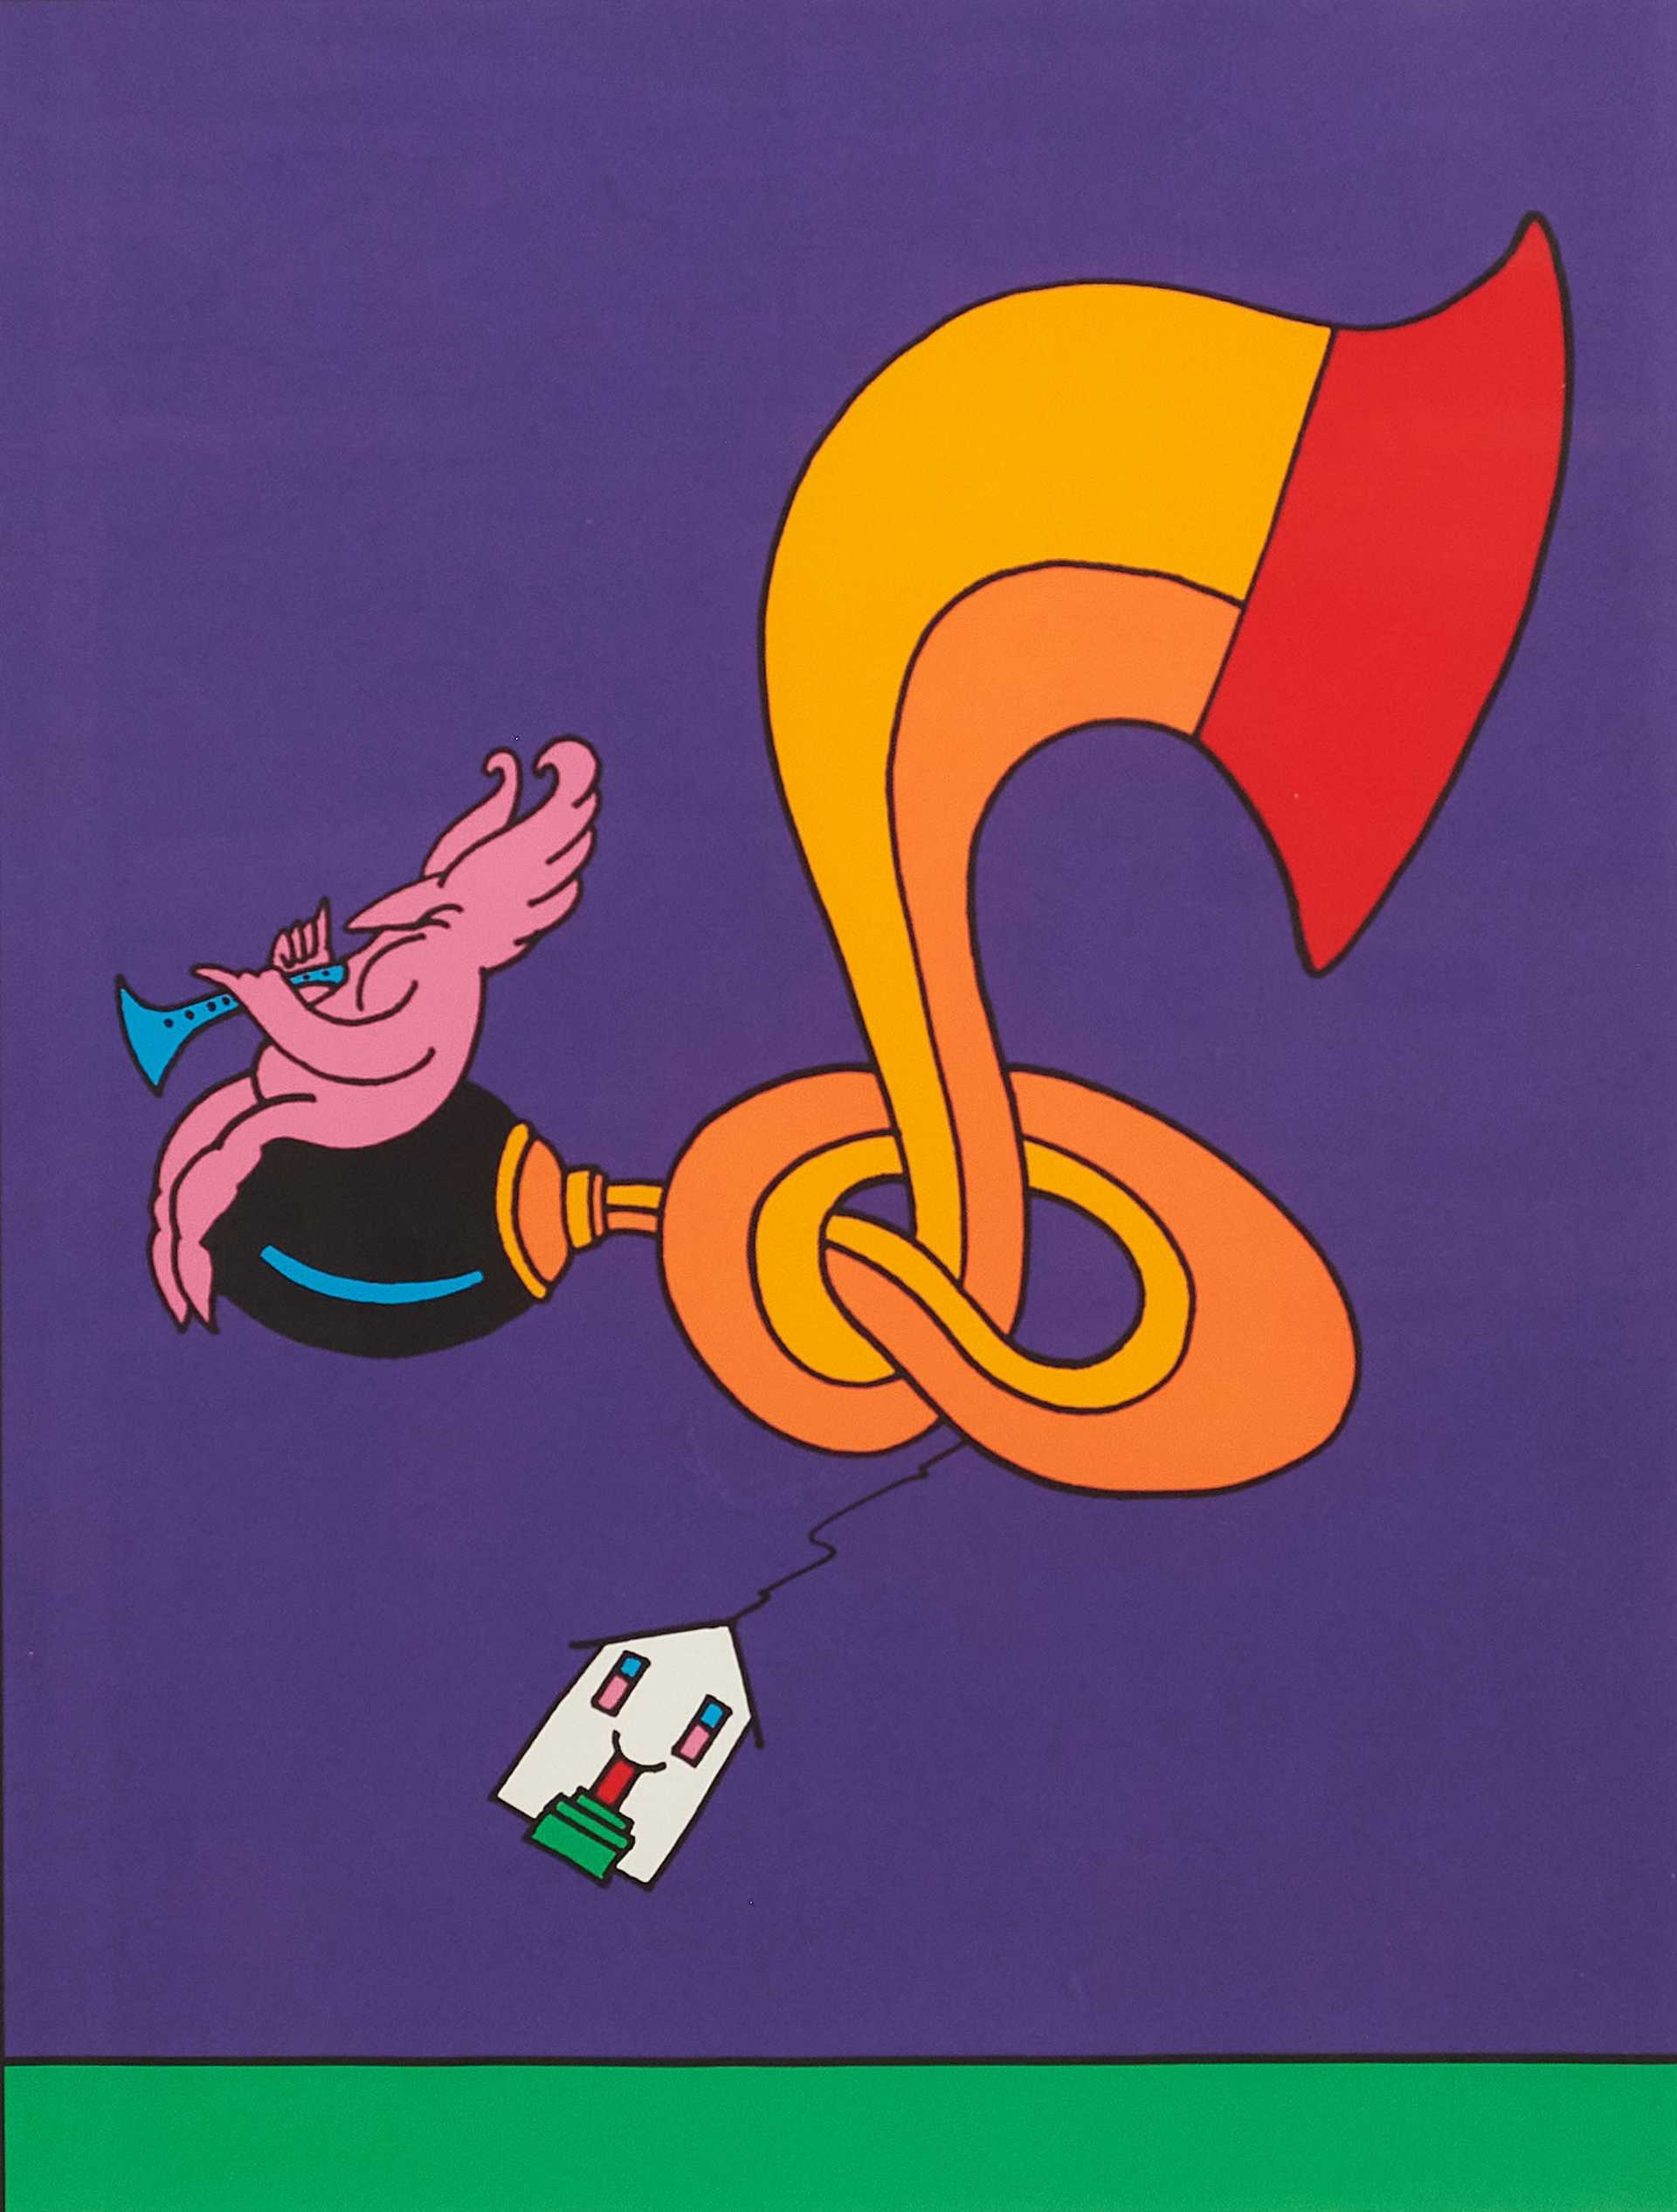 Kébec son, vingt ans de passion (Sic) - 1996 by Vittorio Fiorucci, 1996